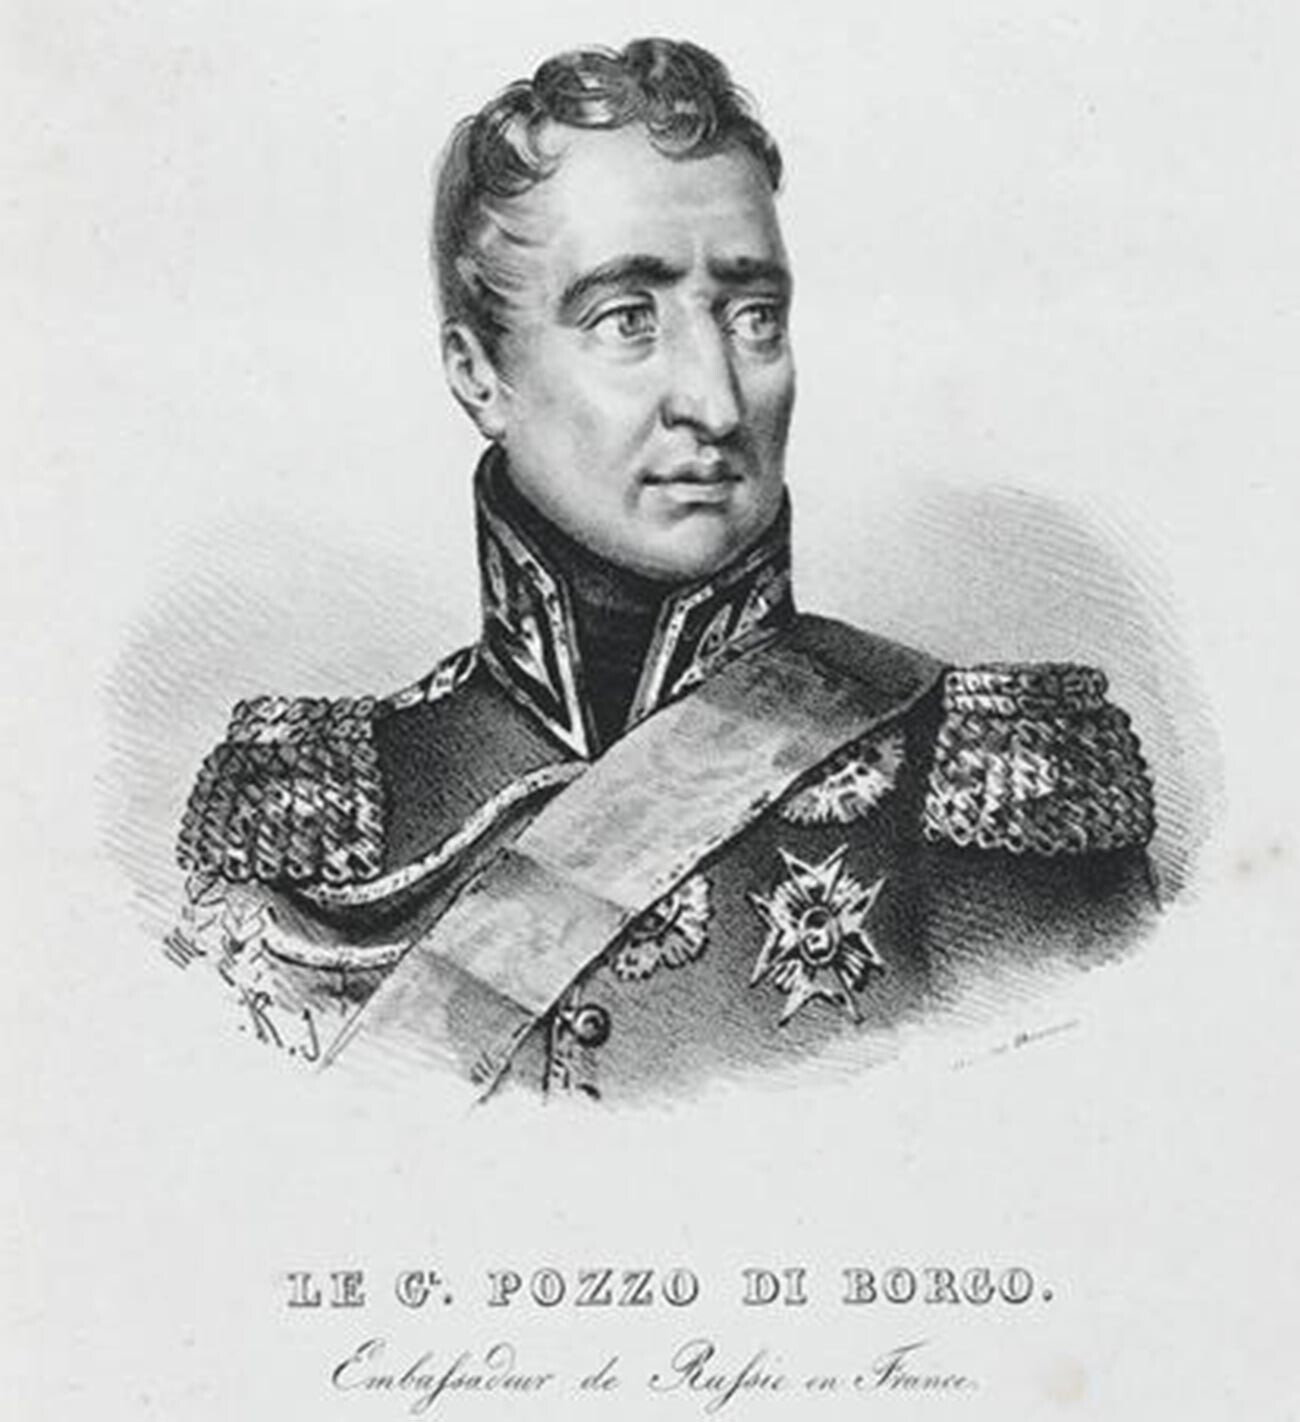 Charles André Pozzo di Borgo